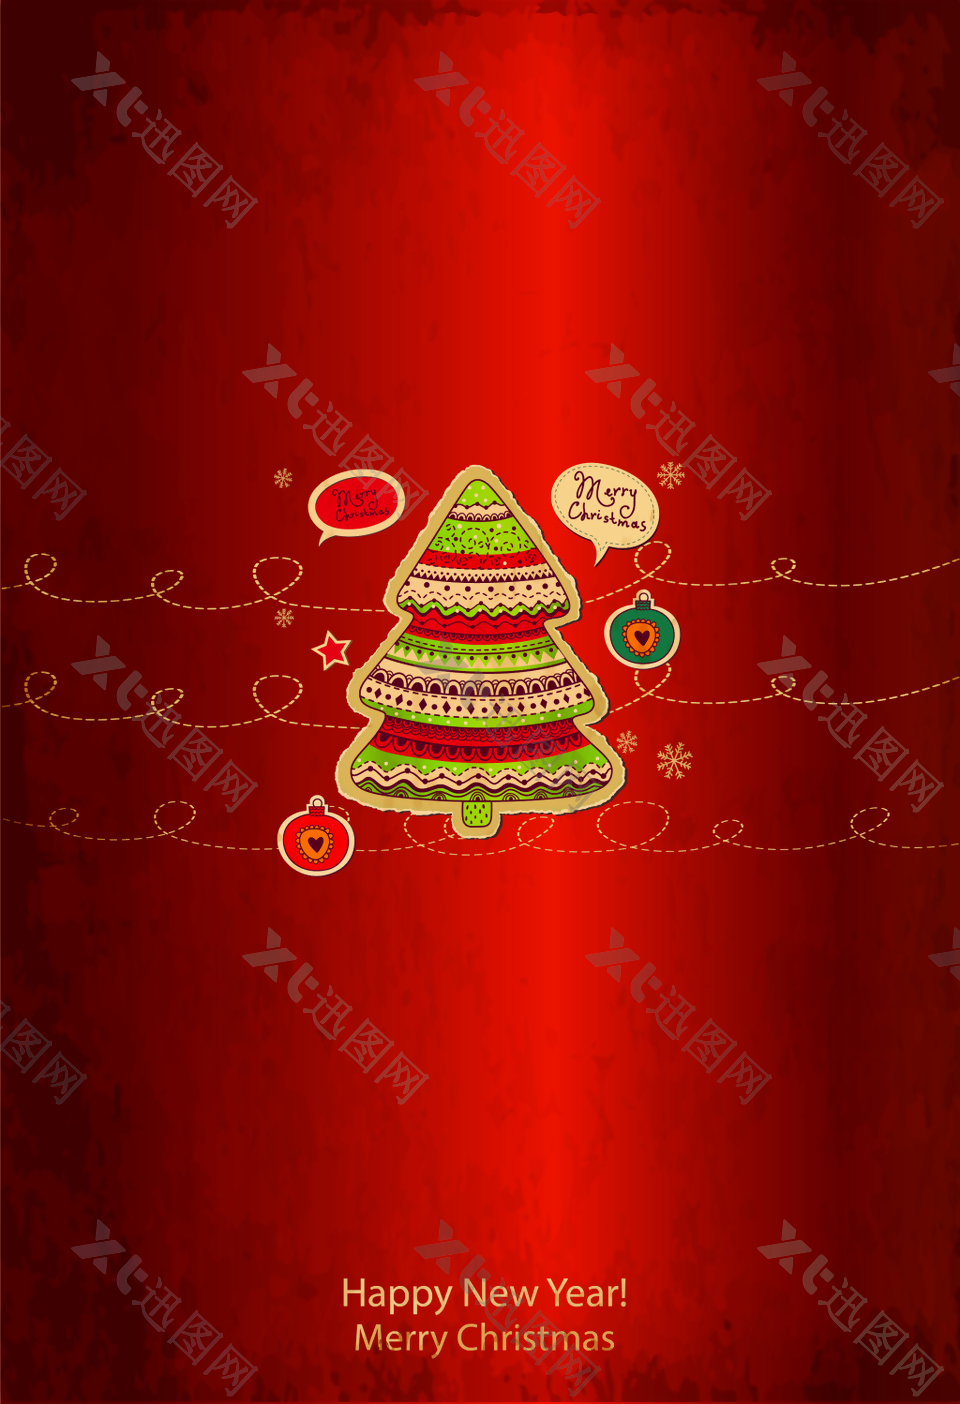 红色童趣手绘圣诞树海报背景素材